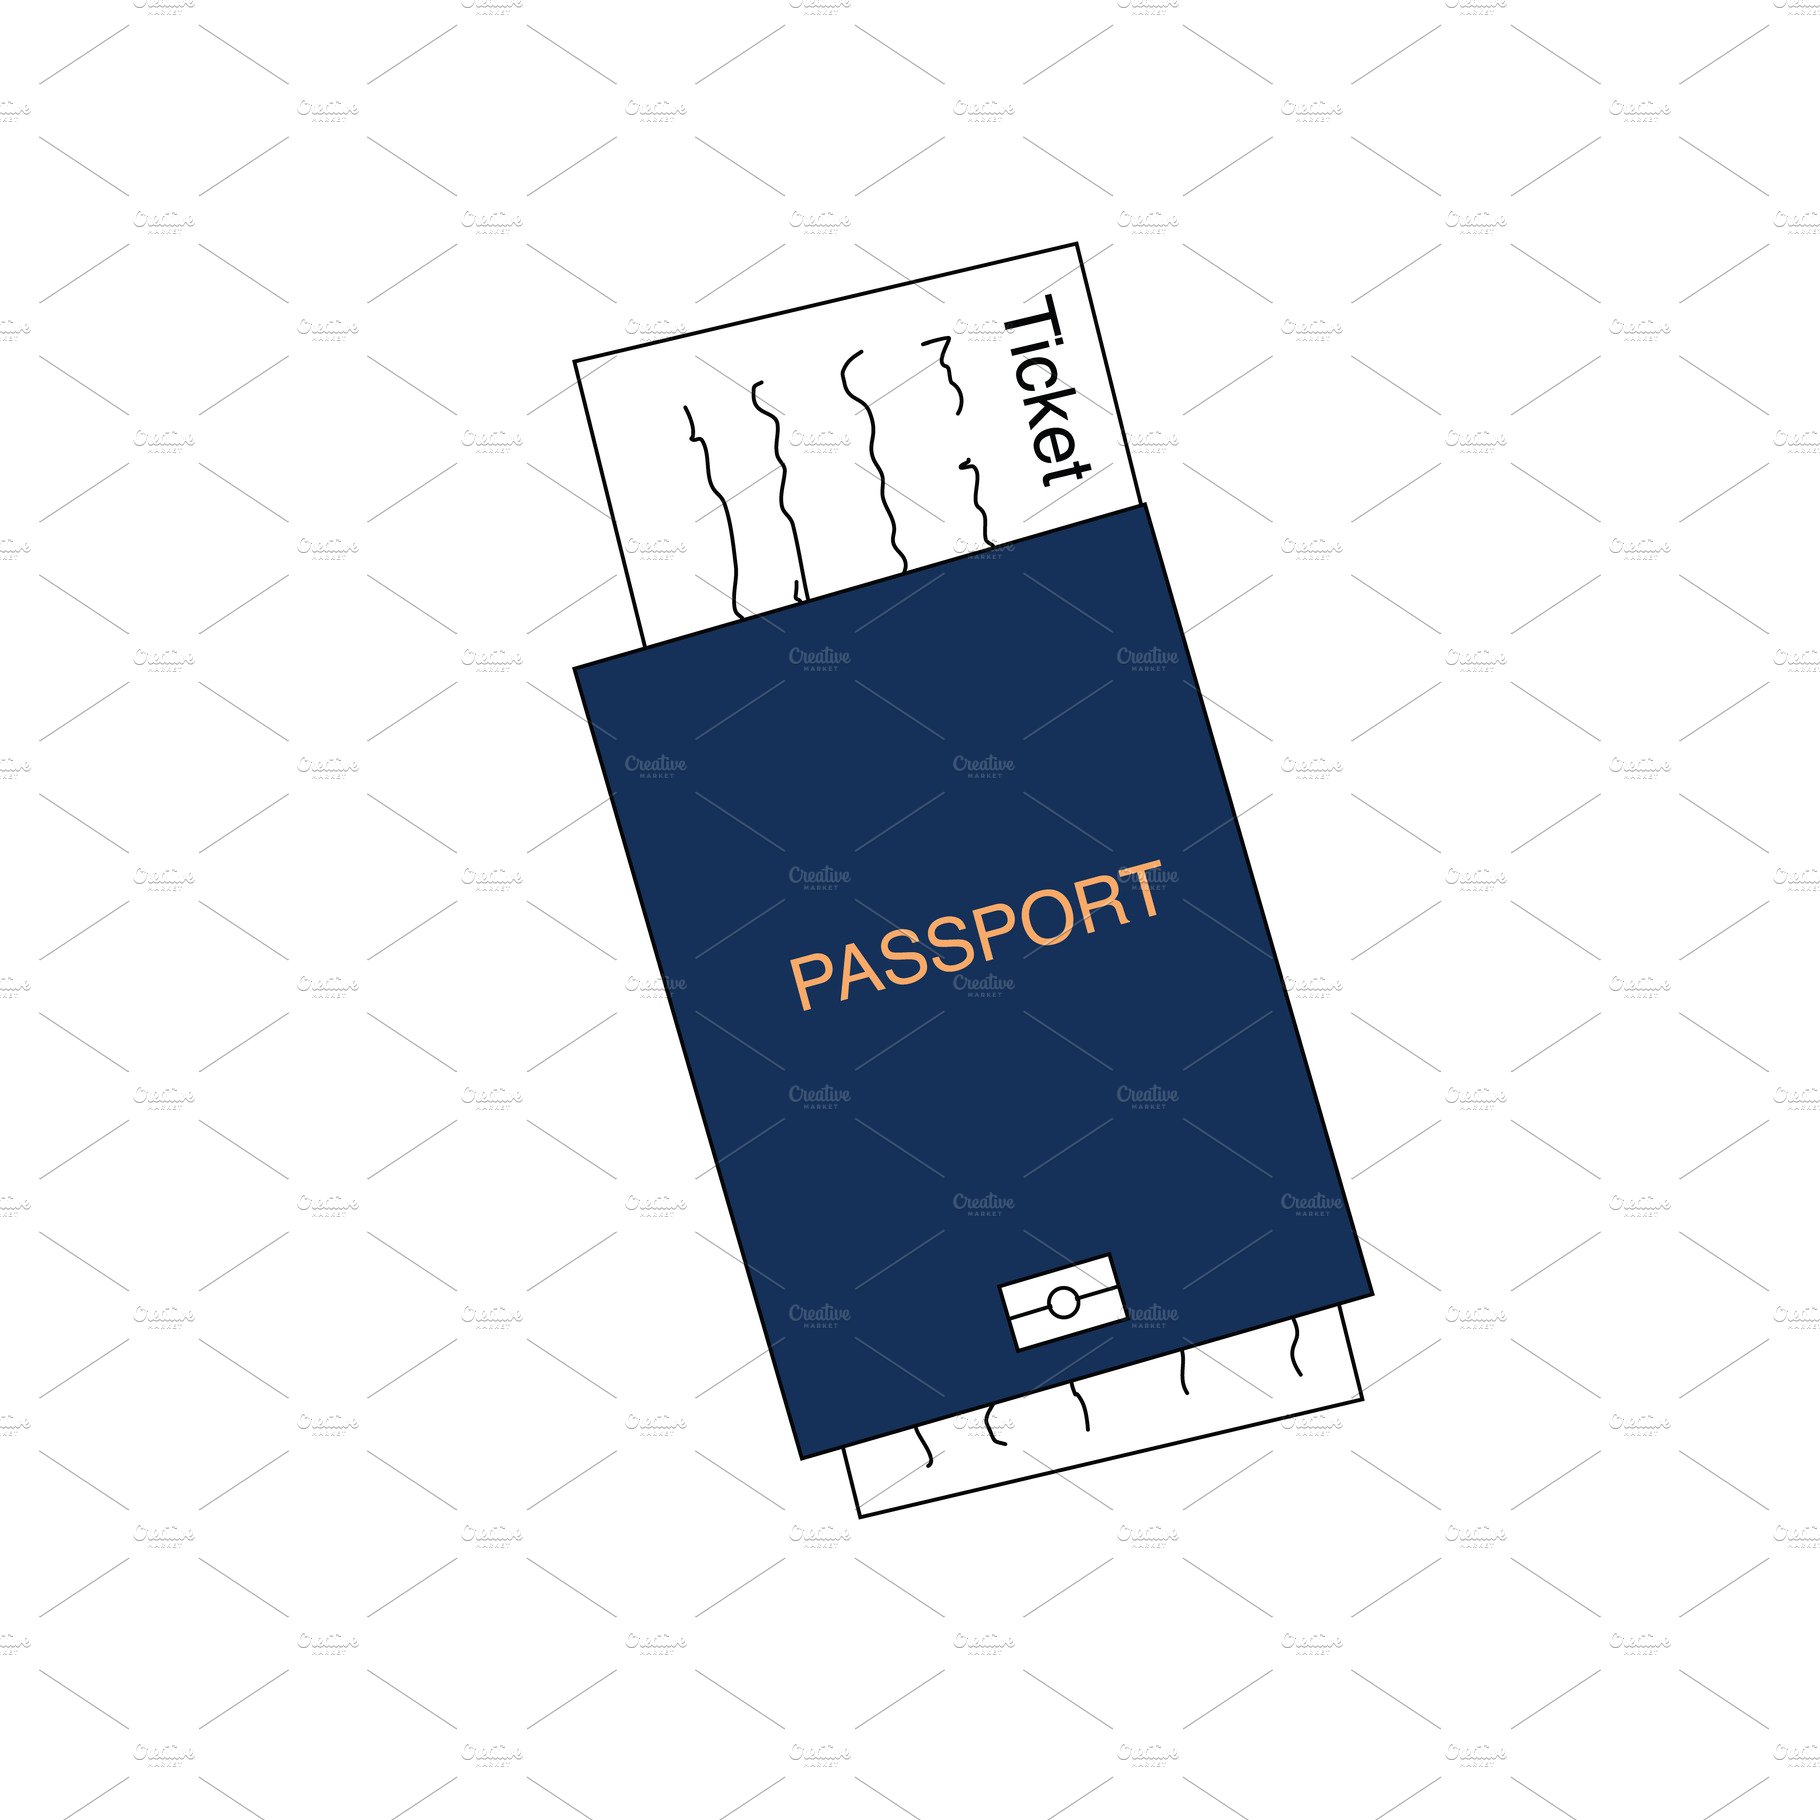 Blue international document, passpor cover image.